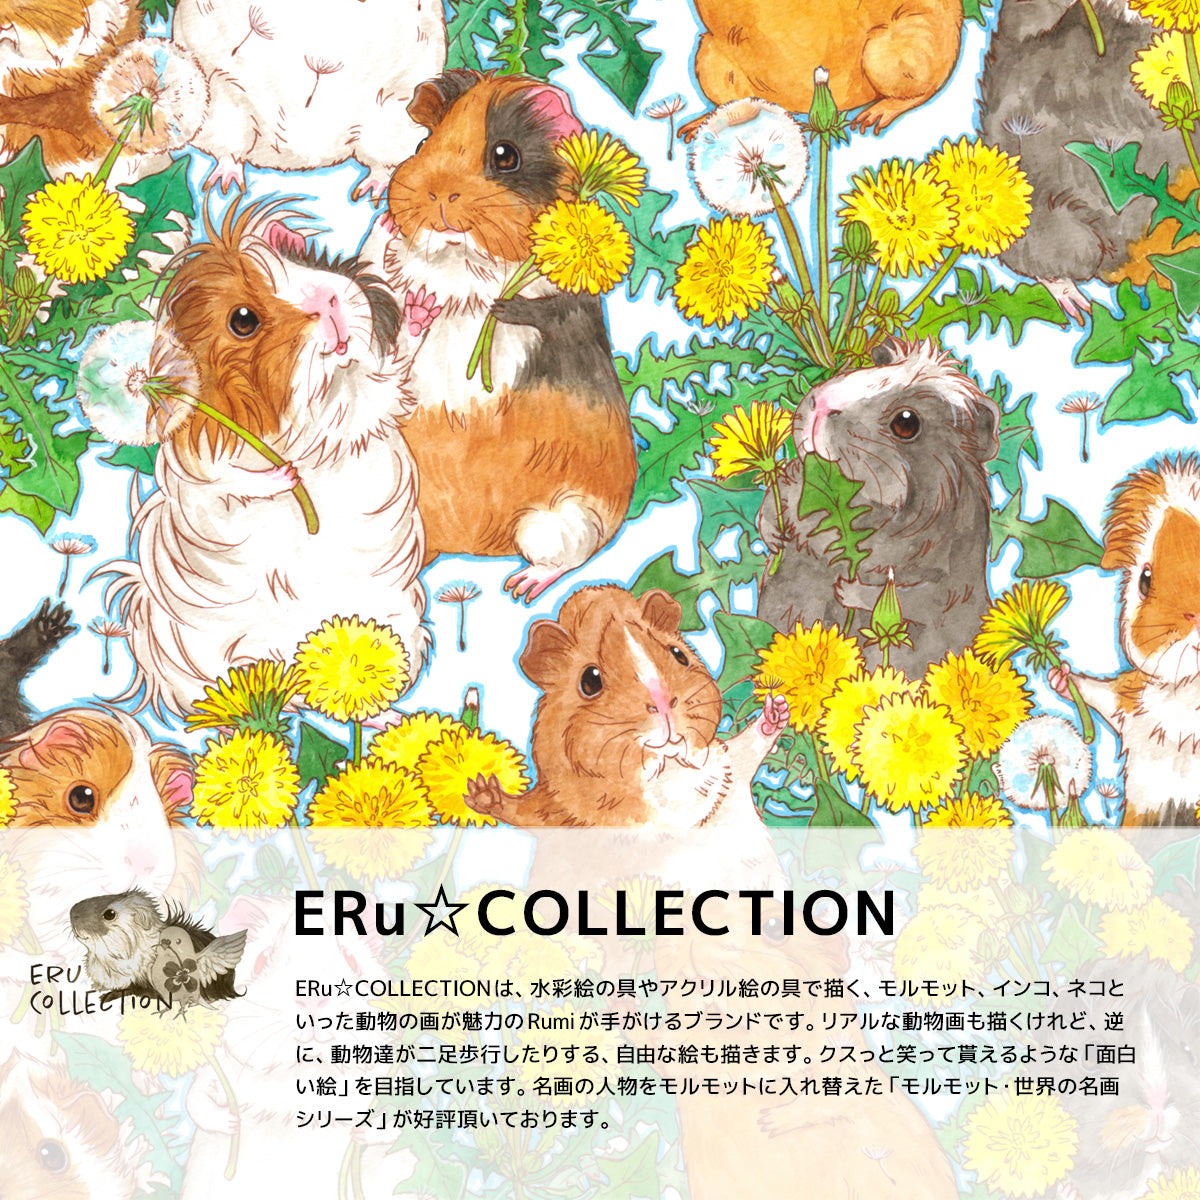 ERu☆COLLECTIONは、水彩絵の具やアクリル絵の具で描く、モルモット、インコ、ネコといった動物の絵が魅力のブランドです。